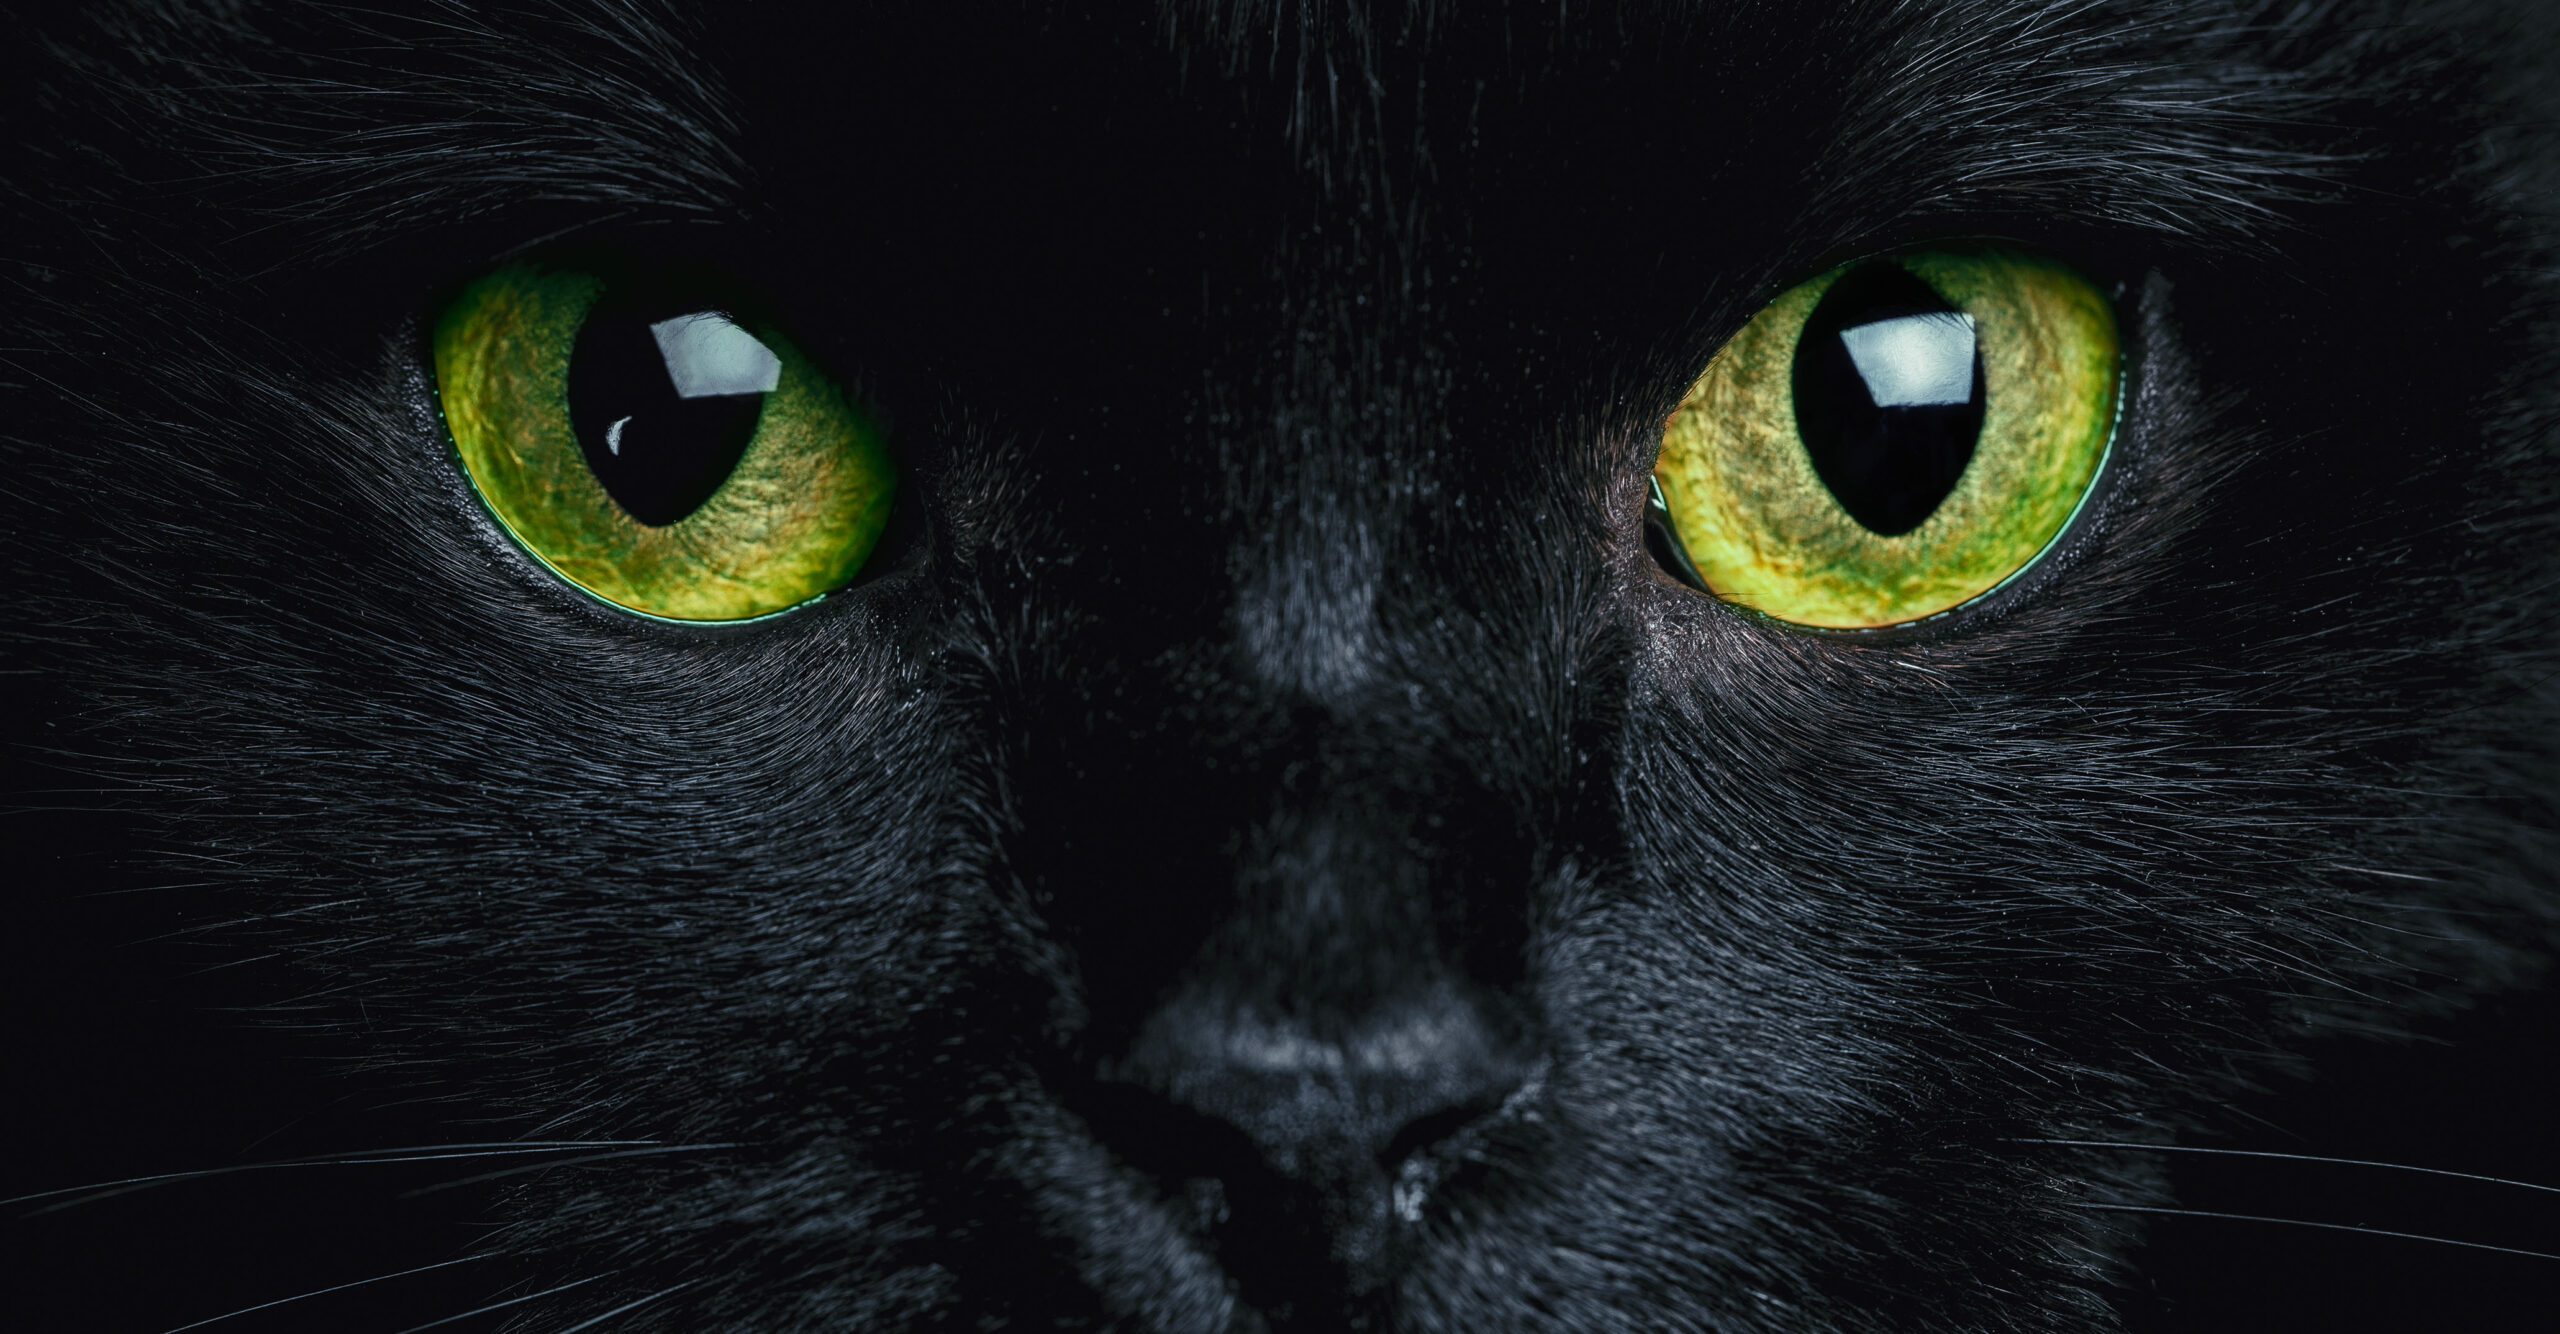 Katzenaugen werfen im Dunkeln Licht zurück, wie die sogenannten